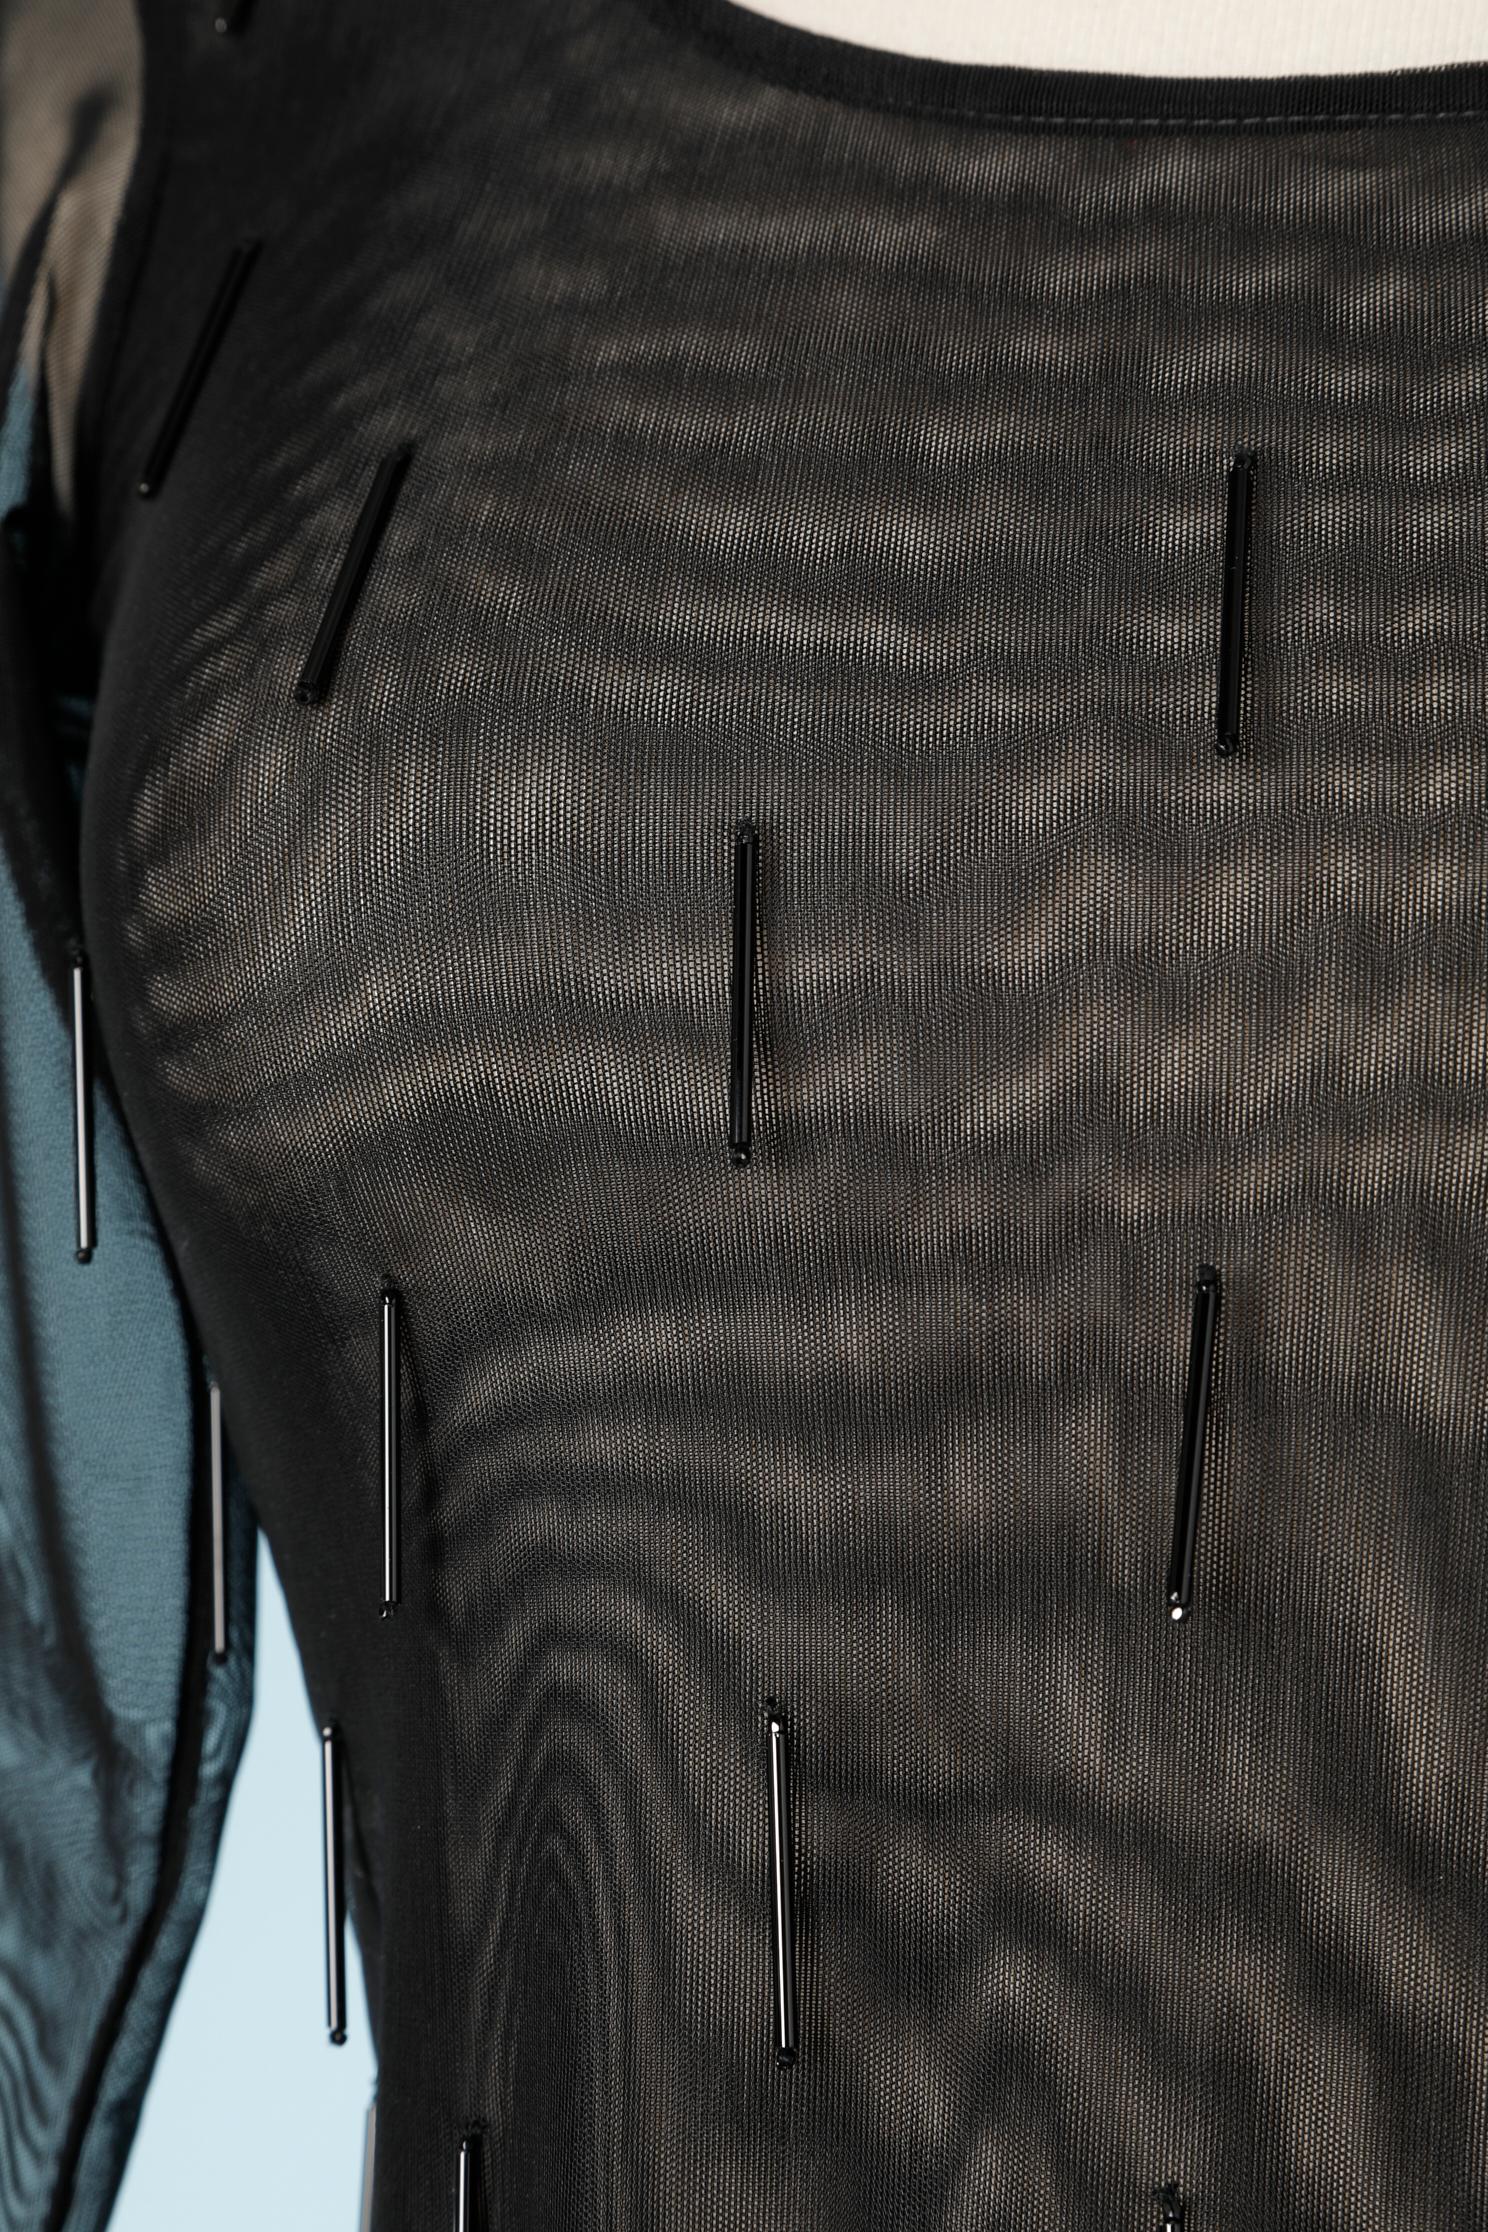 Schwarzer Tüll-Bodysuit mit schwarzen Baguette-Perlen aus Glas. Schnappverschluss am Boden.
Zusammensetzung des Stoffes: 80% Polyester, 20% Stretch. 
NEU mit Etikett 
GRÖSSE 40 (It) 36 (Fr) aber passt eher XXS 